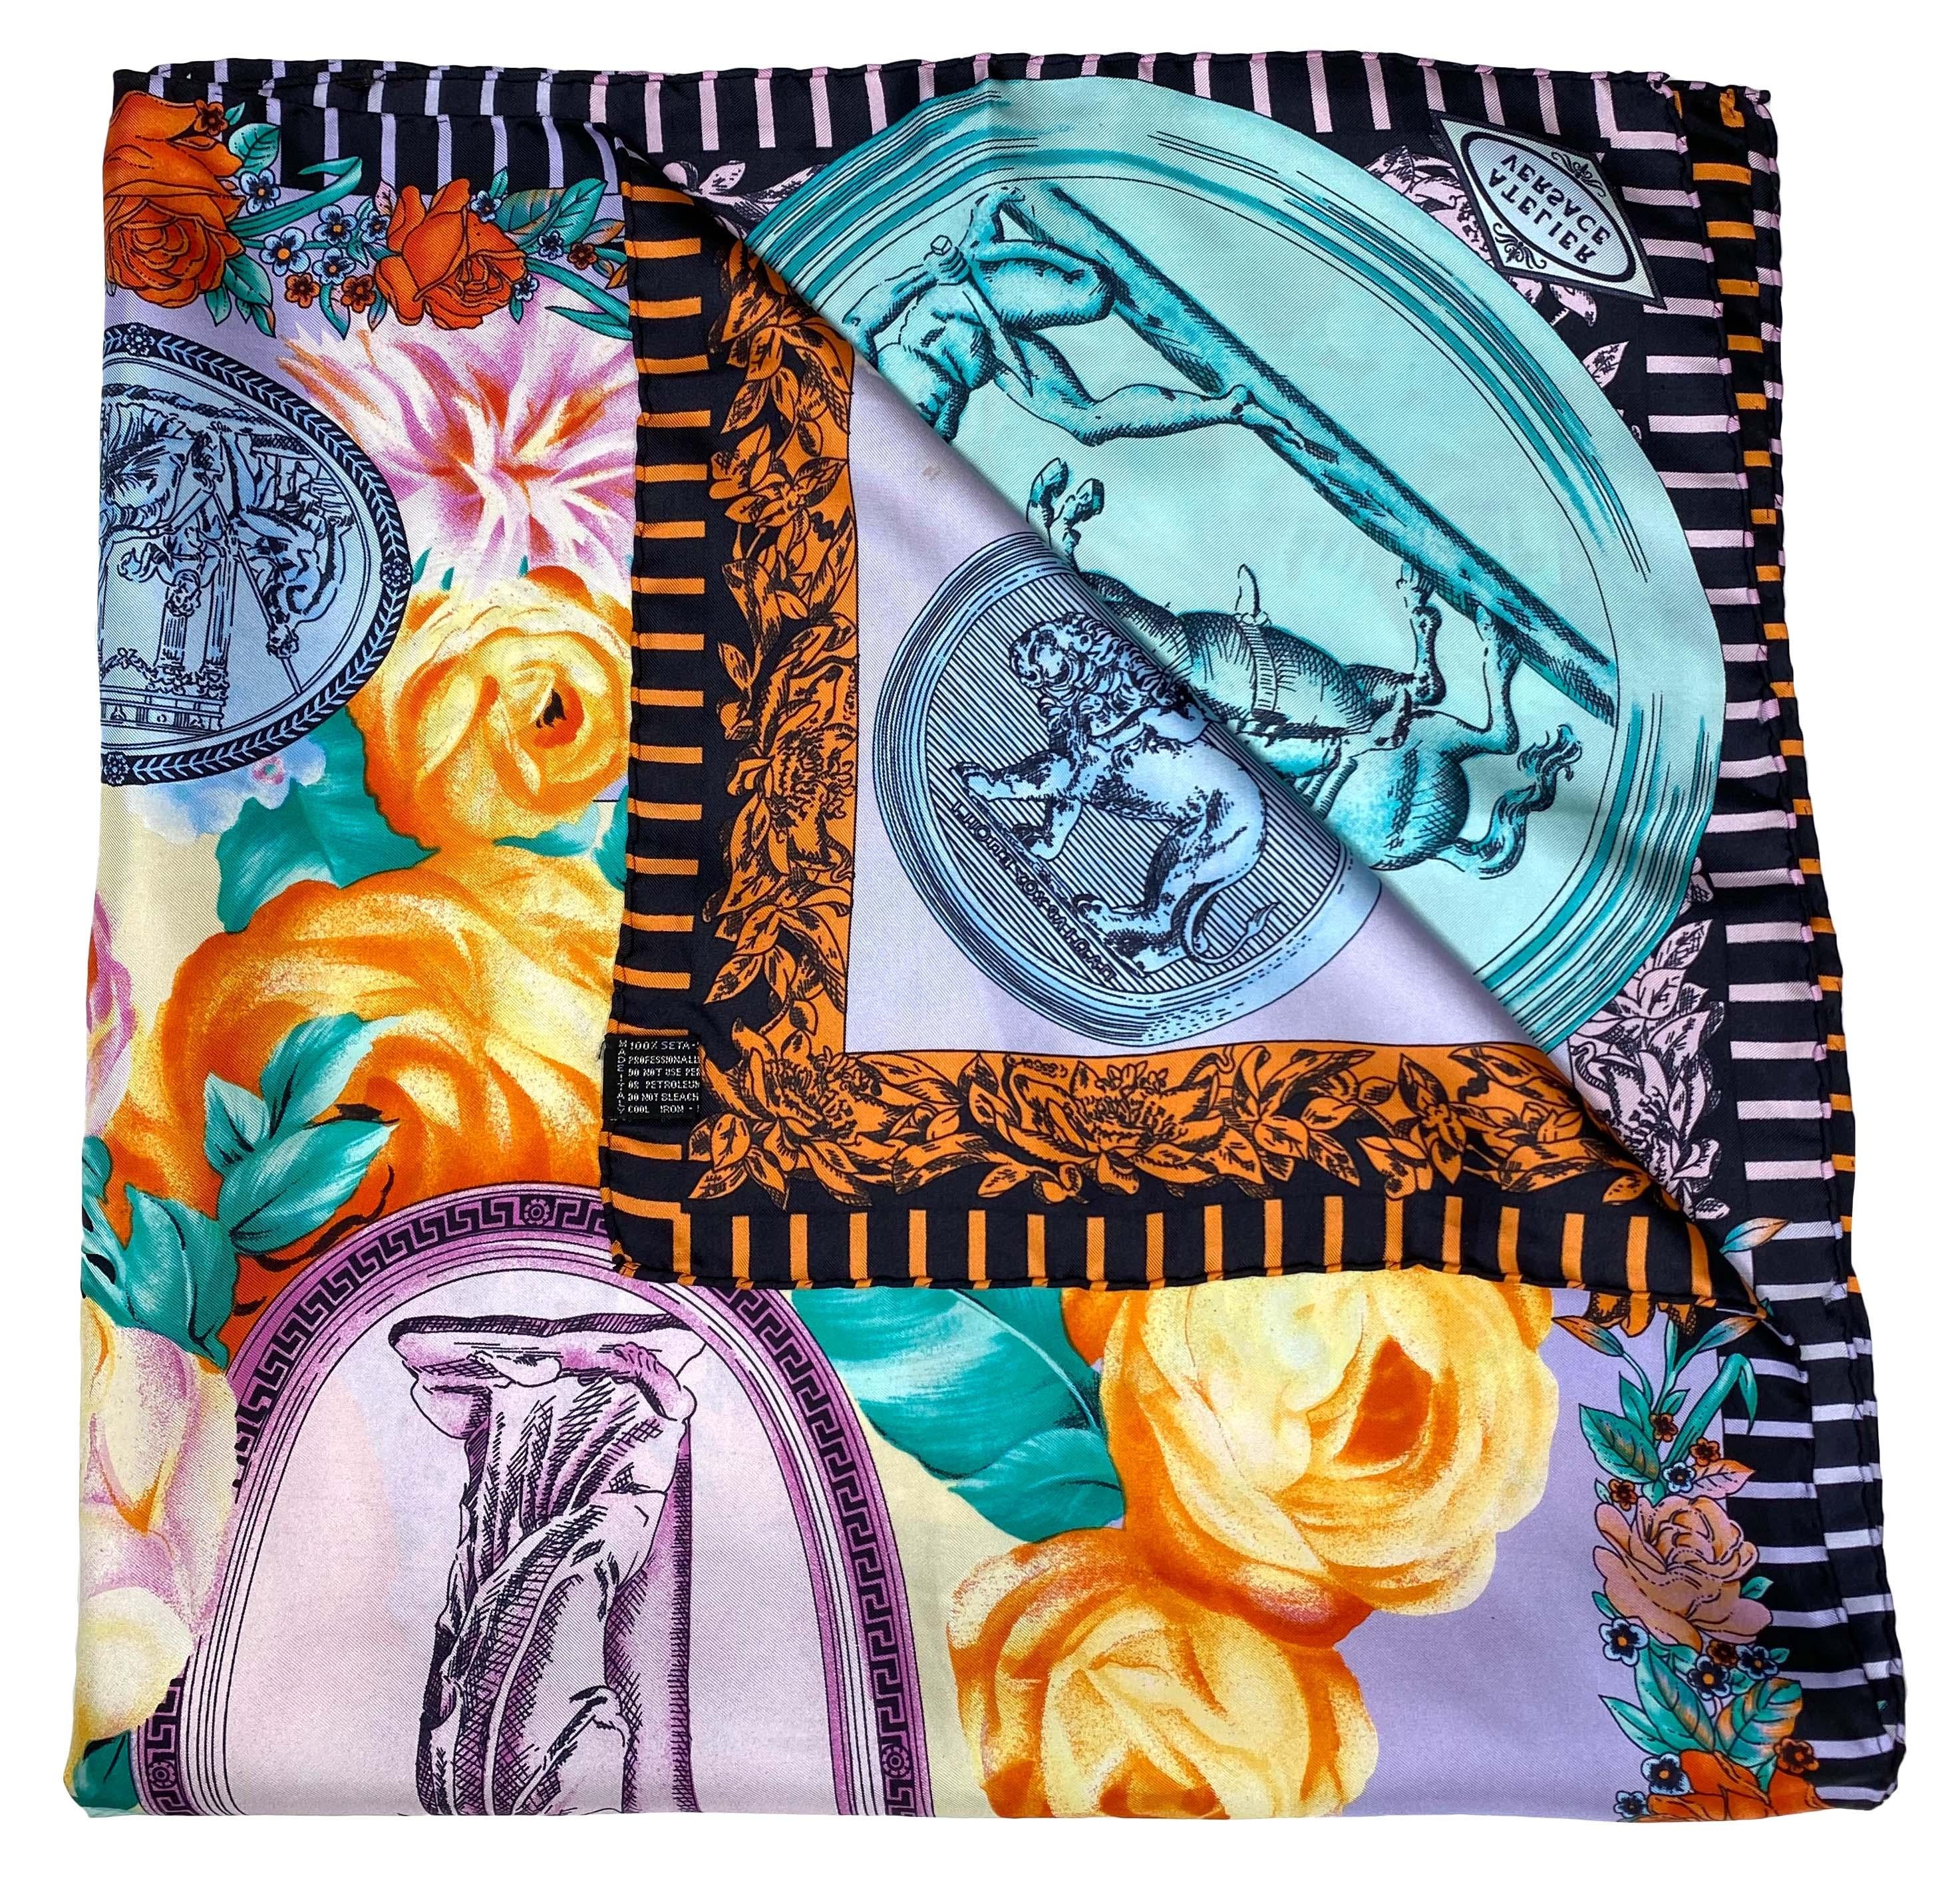 Voici un magnifique foulard carré en soie baroque Atelier Versace, conçu par Gianni Versace. Cette écharpe présente des pièces grecques/romaines aux couleurs pastel avec des scènes anciennes sculptées et des fleurs multicolores. 
